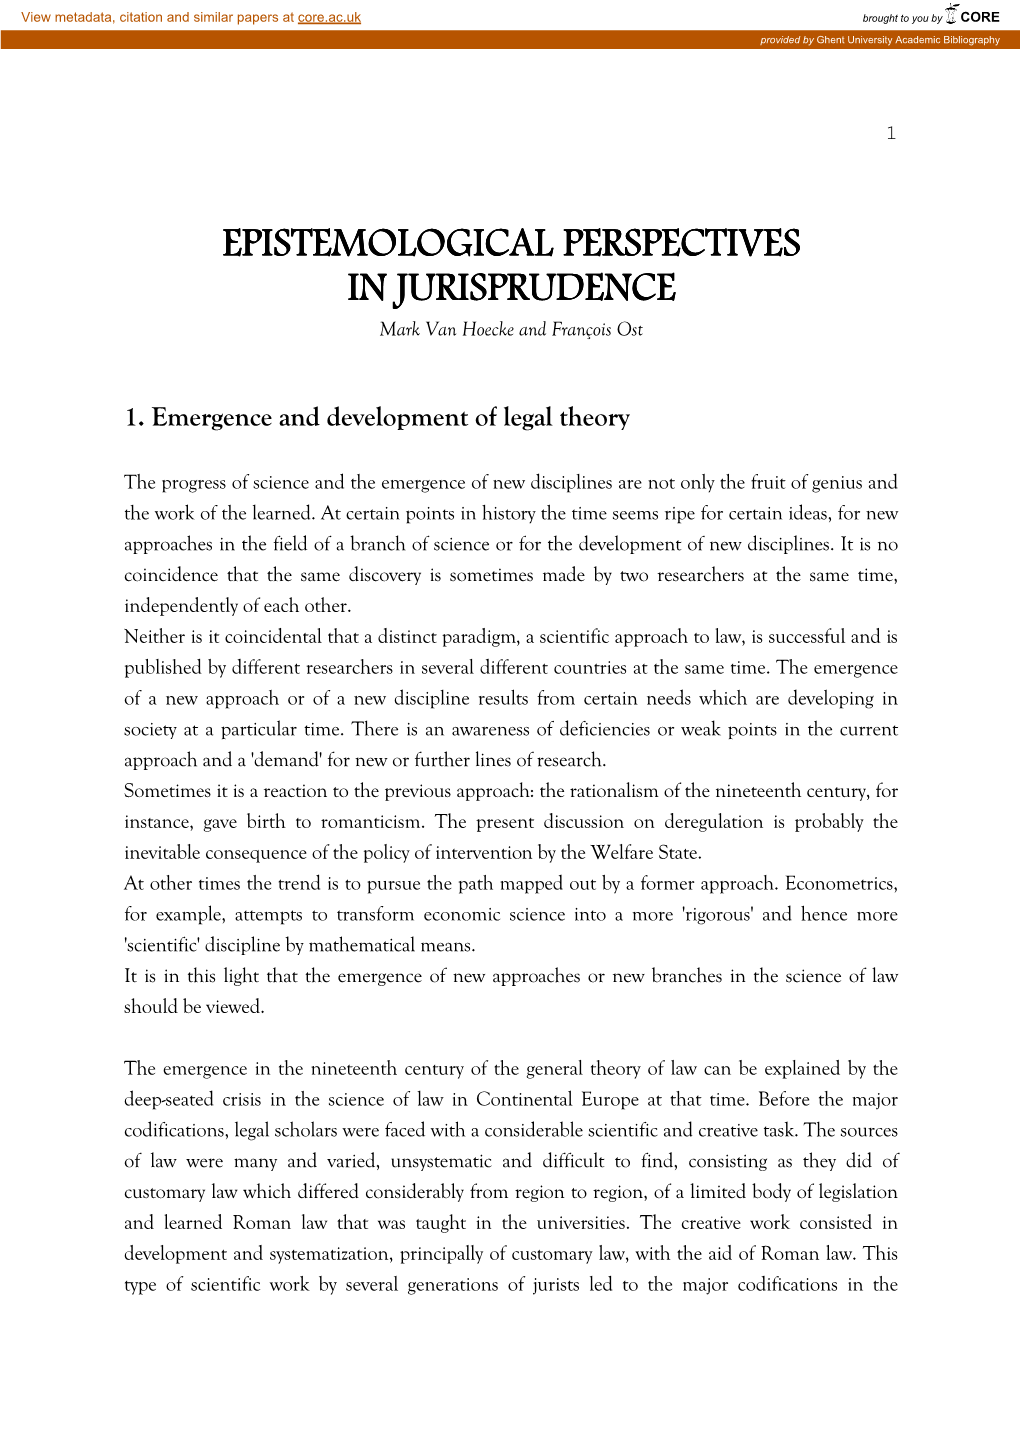 EPISTEMOLOGICAL PERSPECTIVES in JURISPRUDENCE Mark Van Hoecke and François Ost